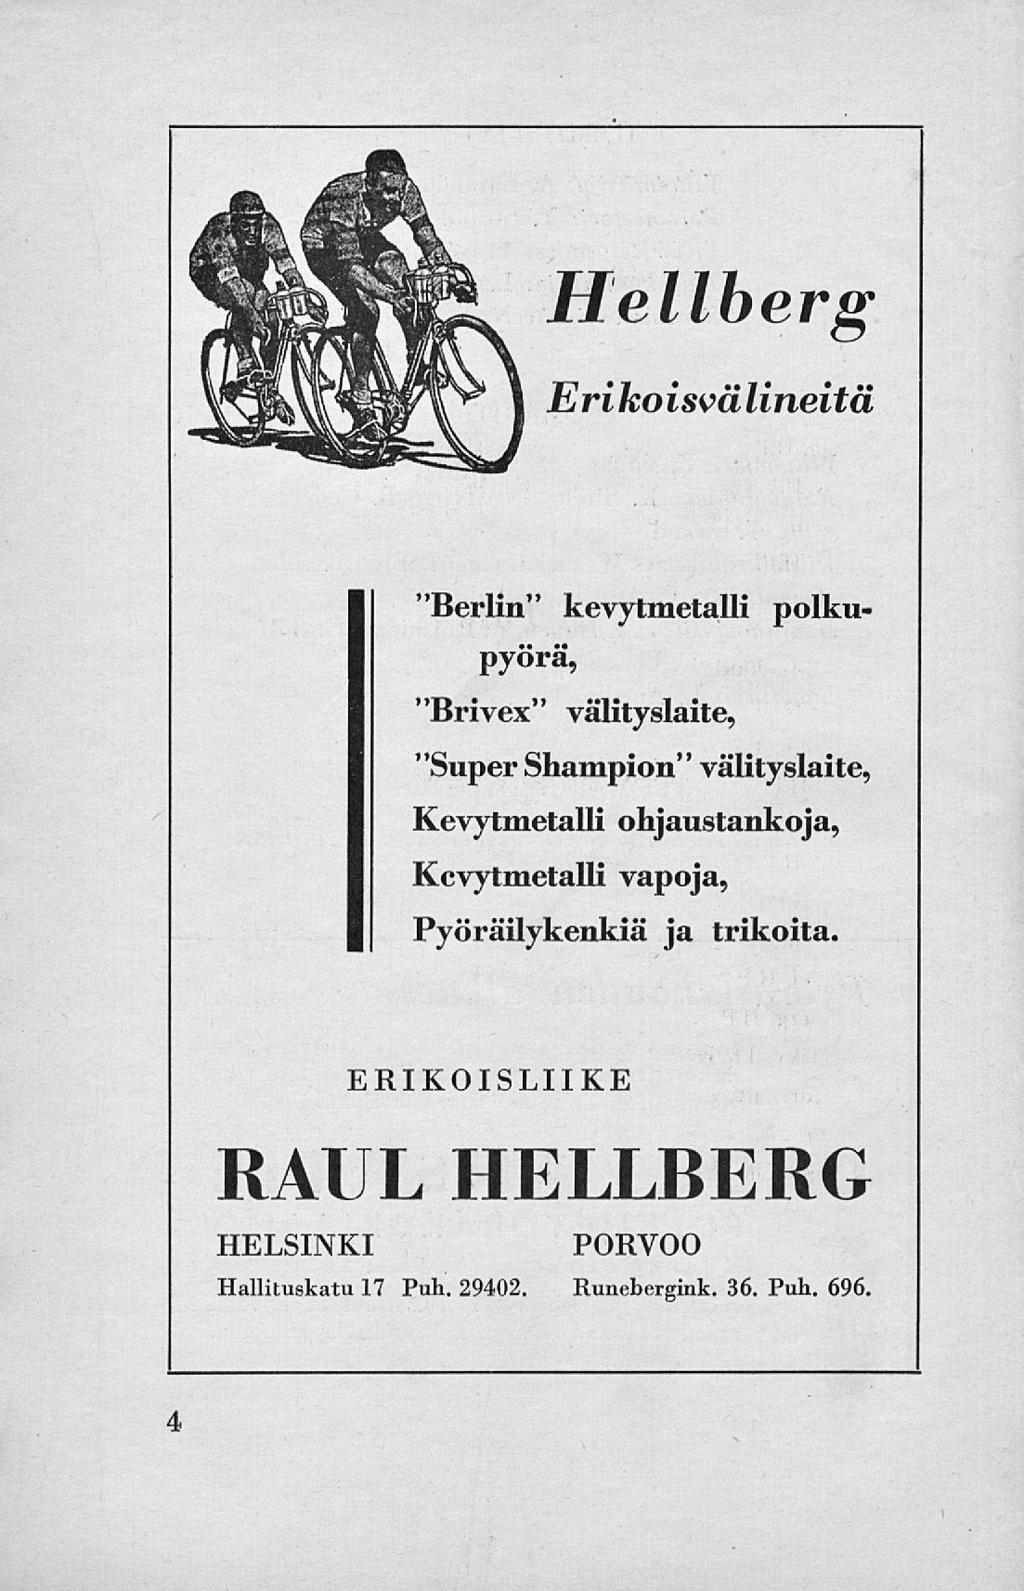 Hellberg Erikoisvälineitä "Berlin" kevytmetalli polkupyörä, "Brivex" välityslaite, "Super Shampion"välityslaite, Kevytmetalli ohjaustankoja,